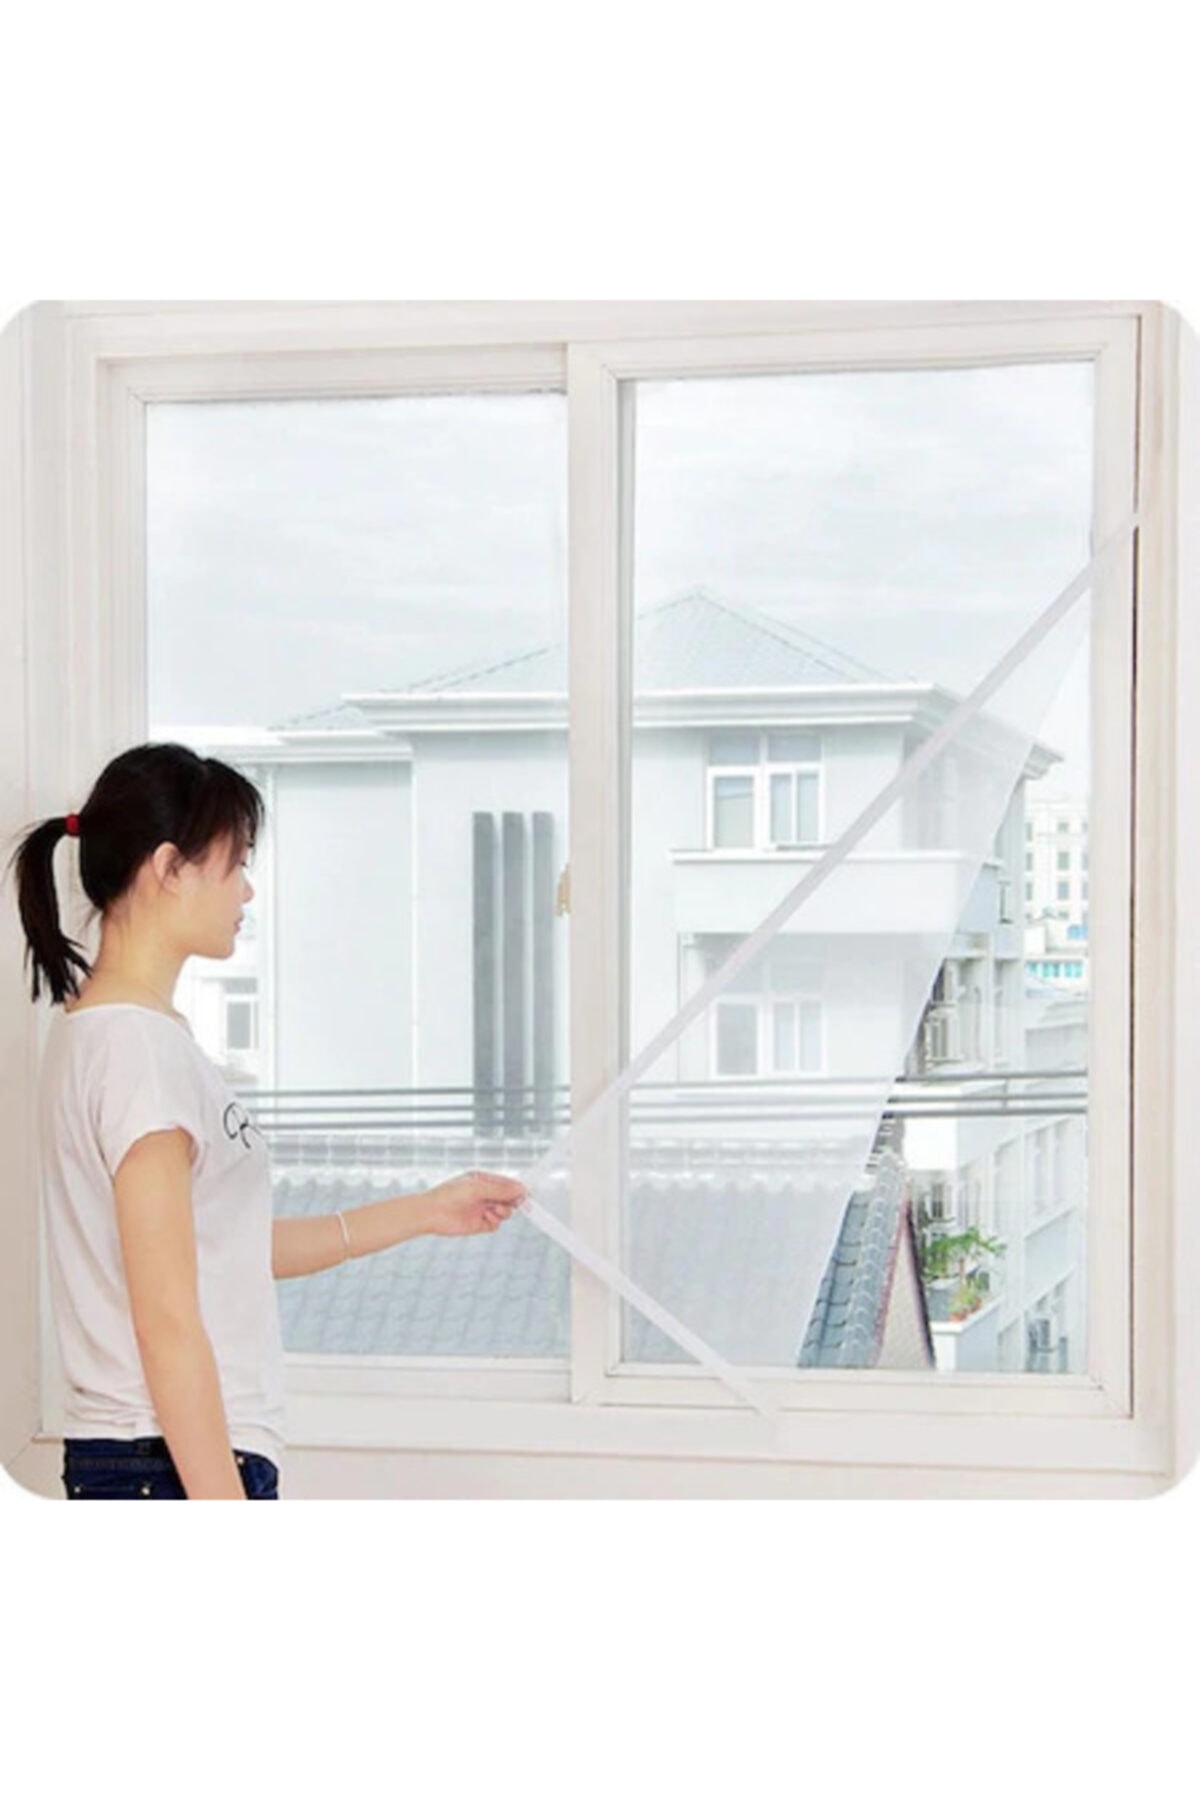 Kesilebilir Pencere Sinekliği Cırt Bantlı Yapışkanlı 100cm X 150cm